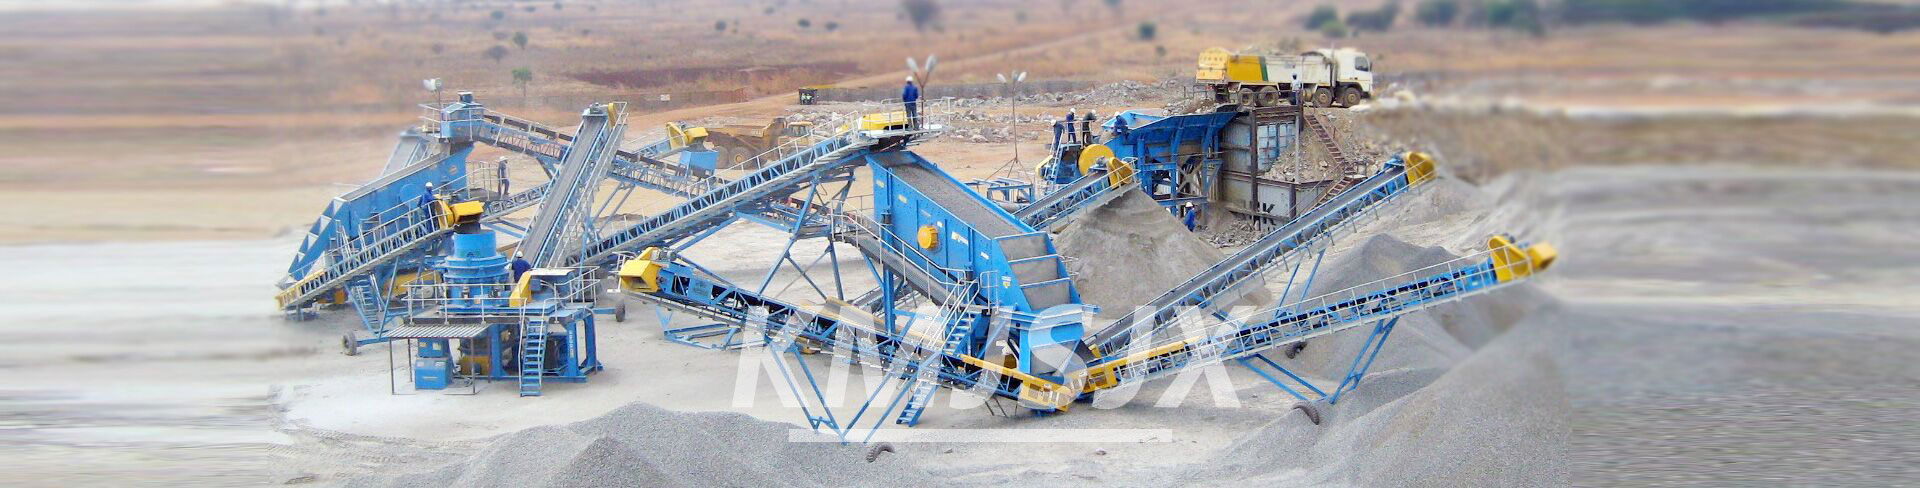 堅石機械專業的礦山設備生產企業